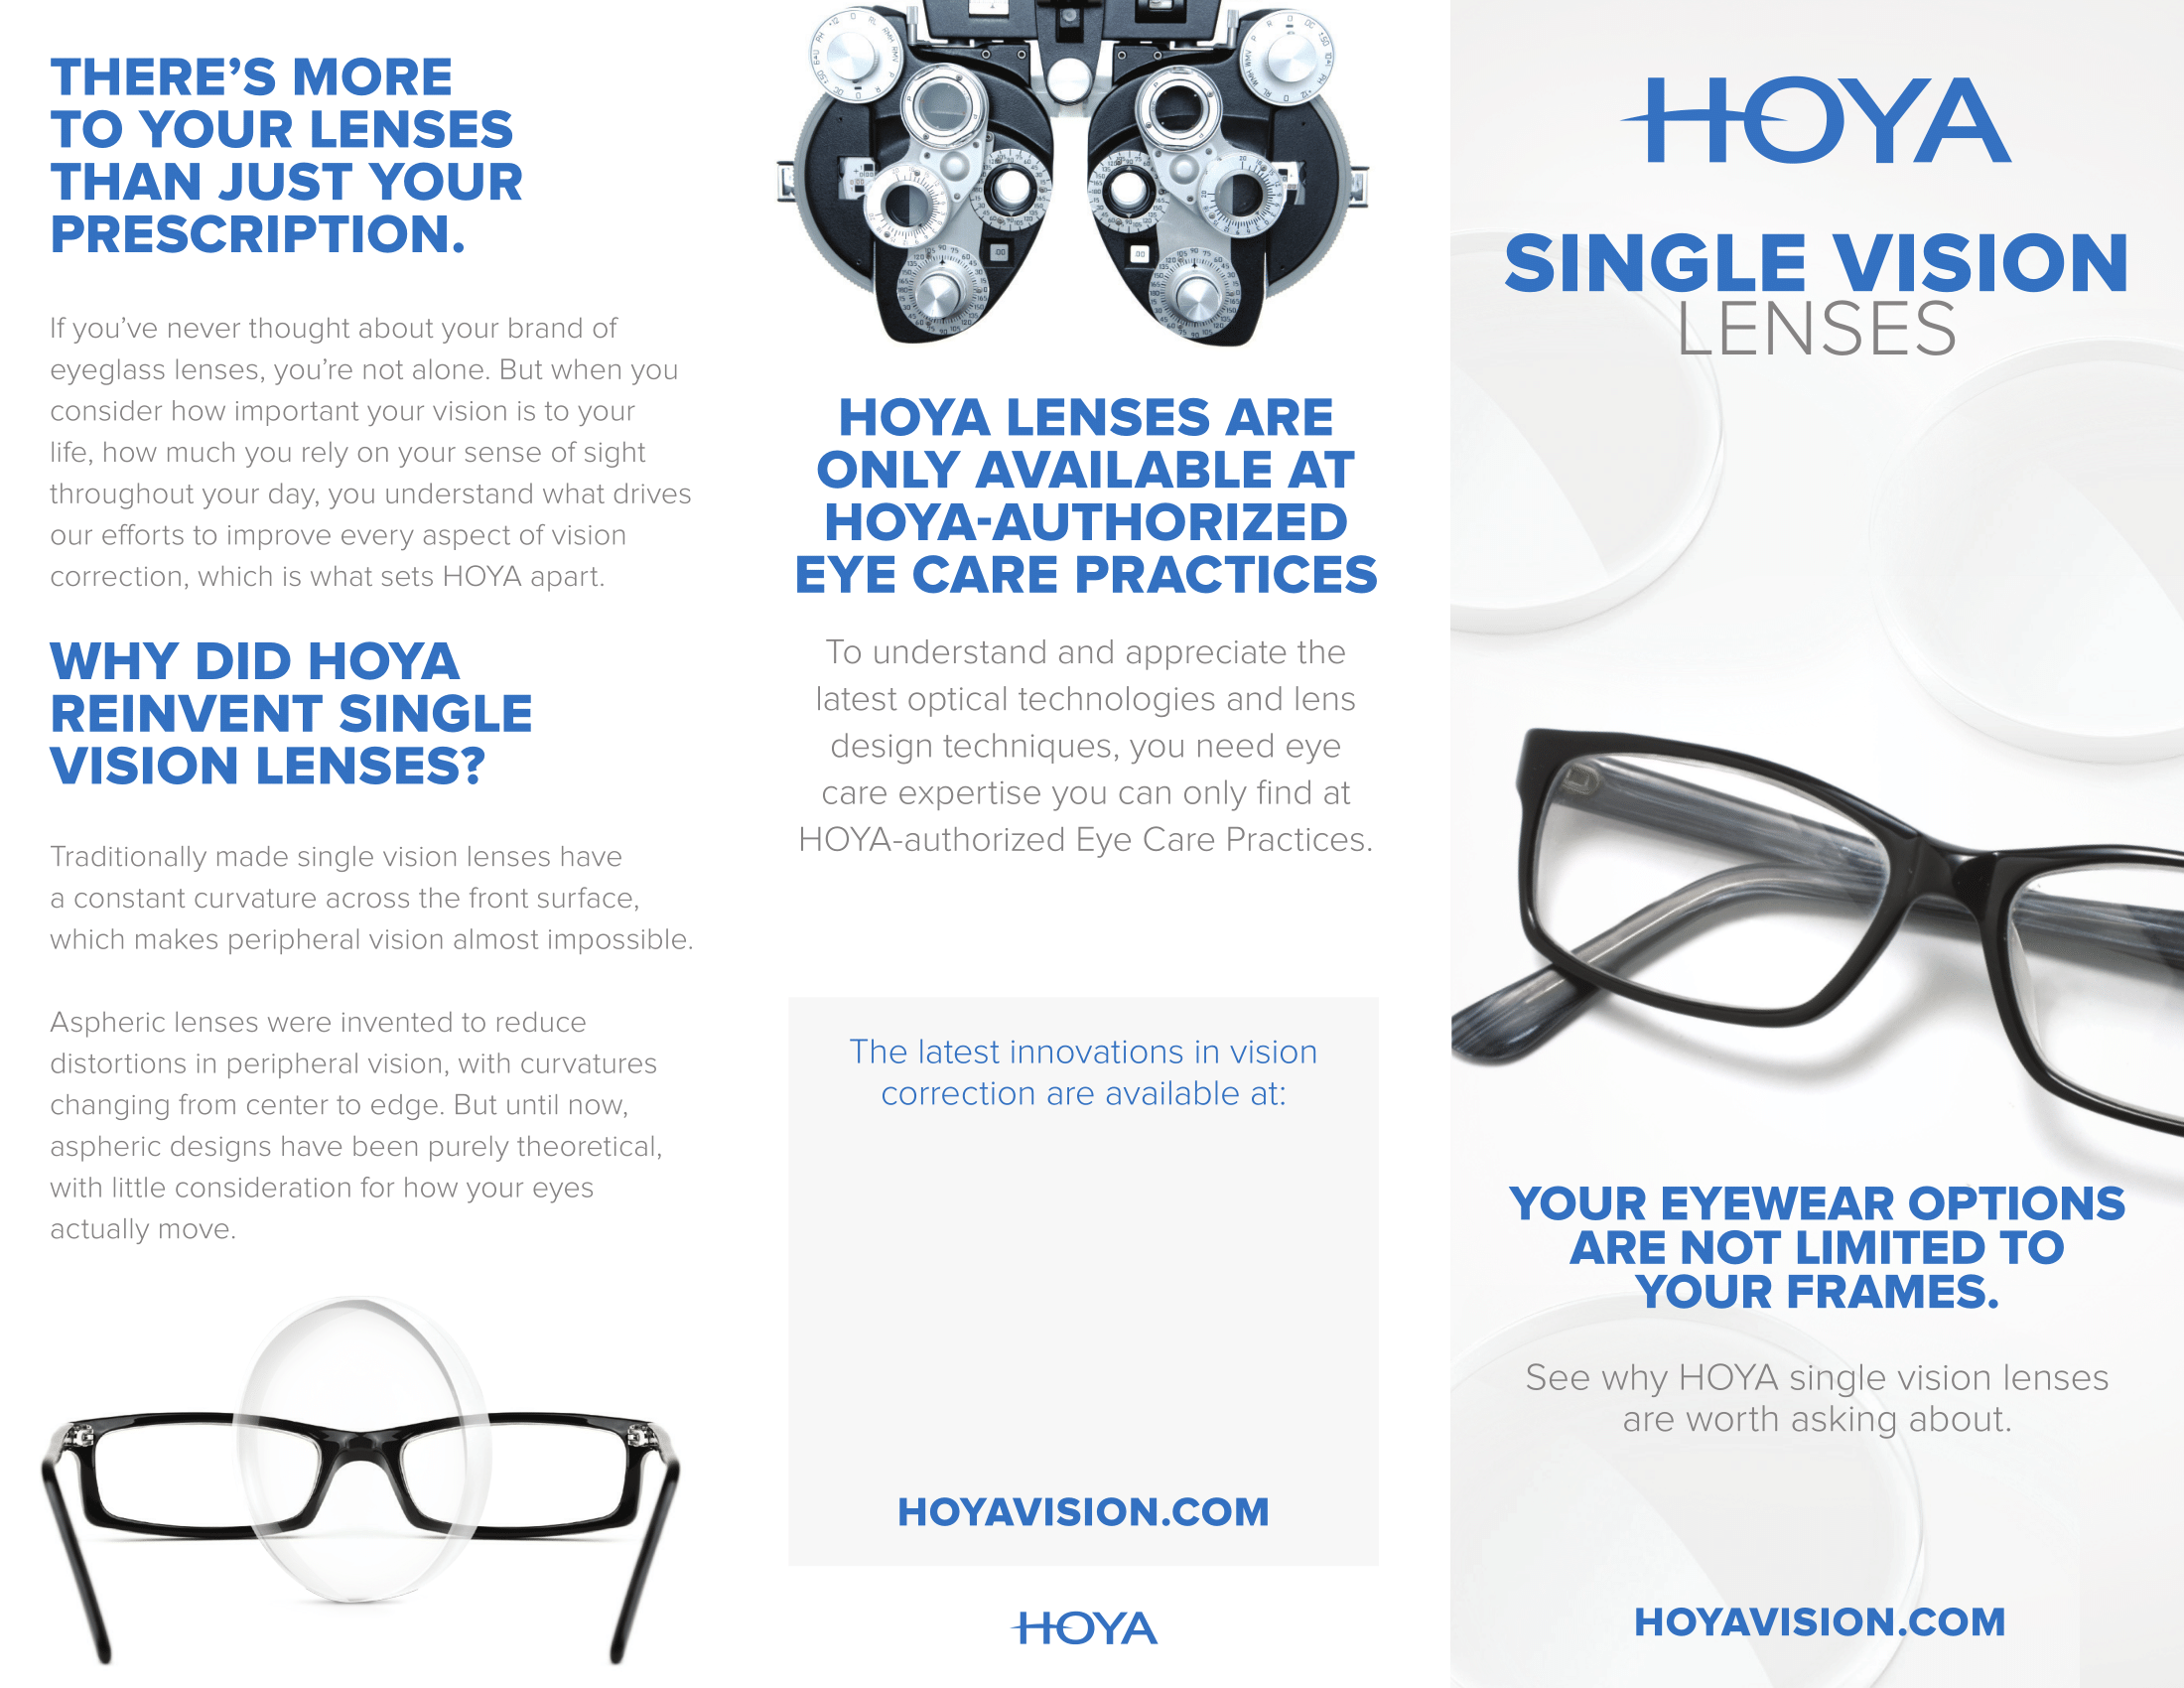 Hoya single vision